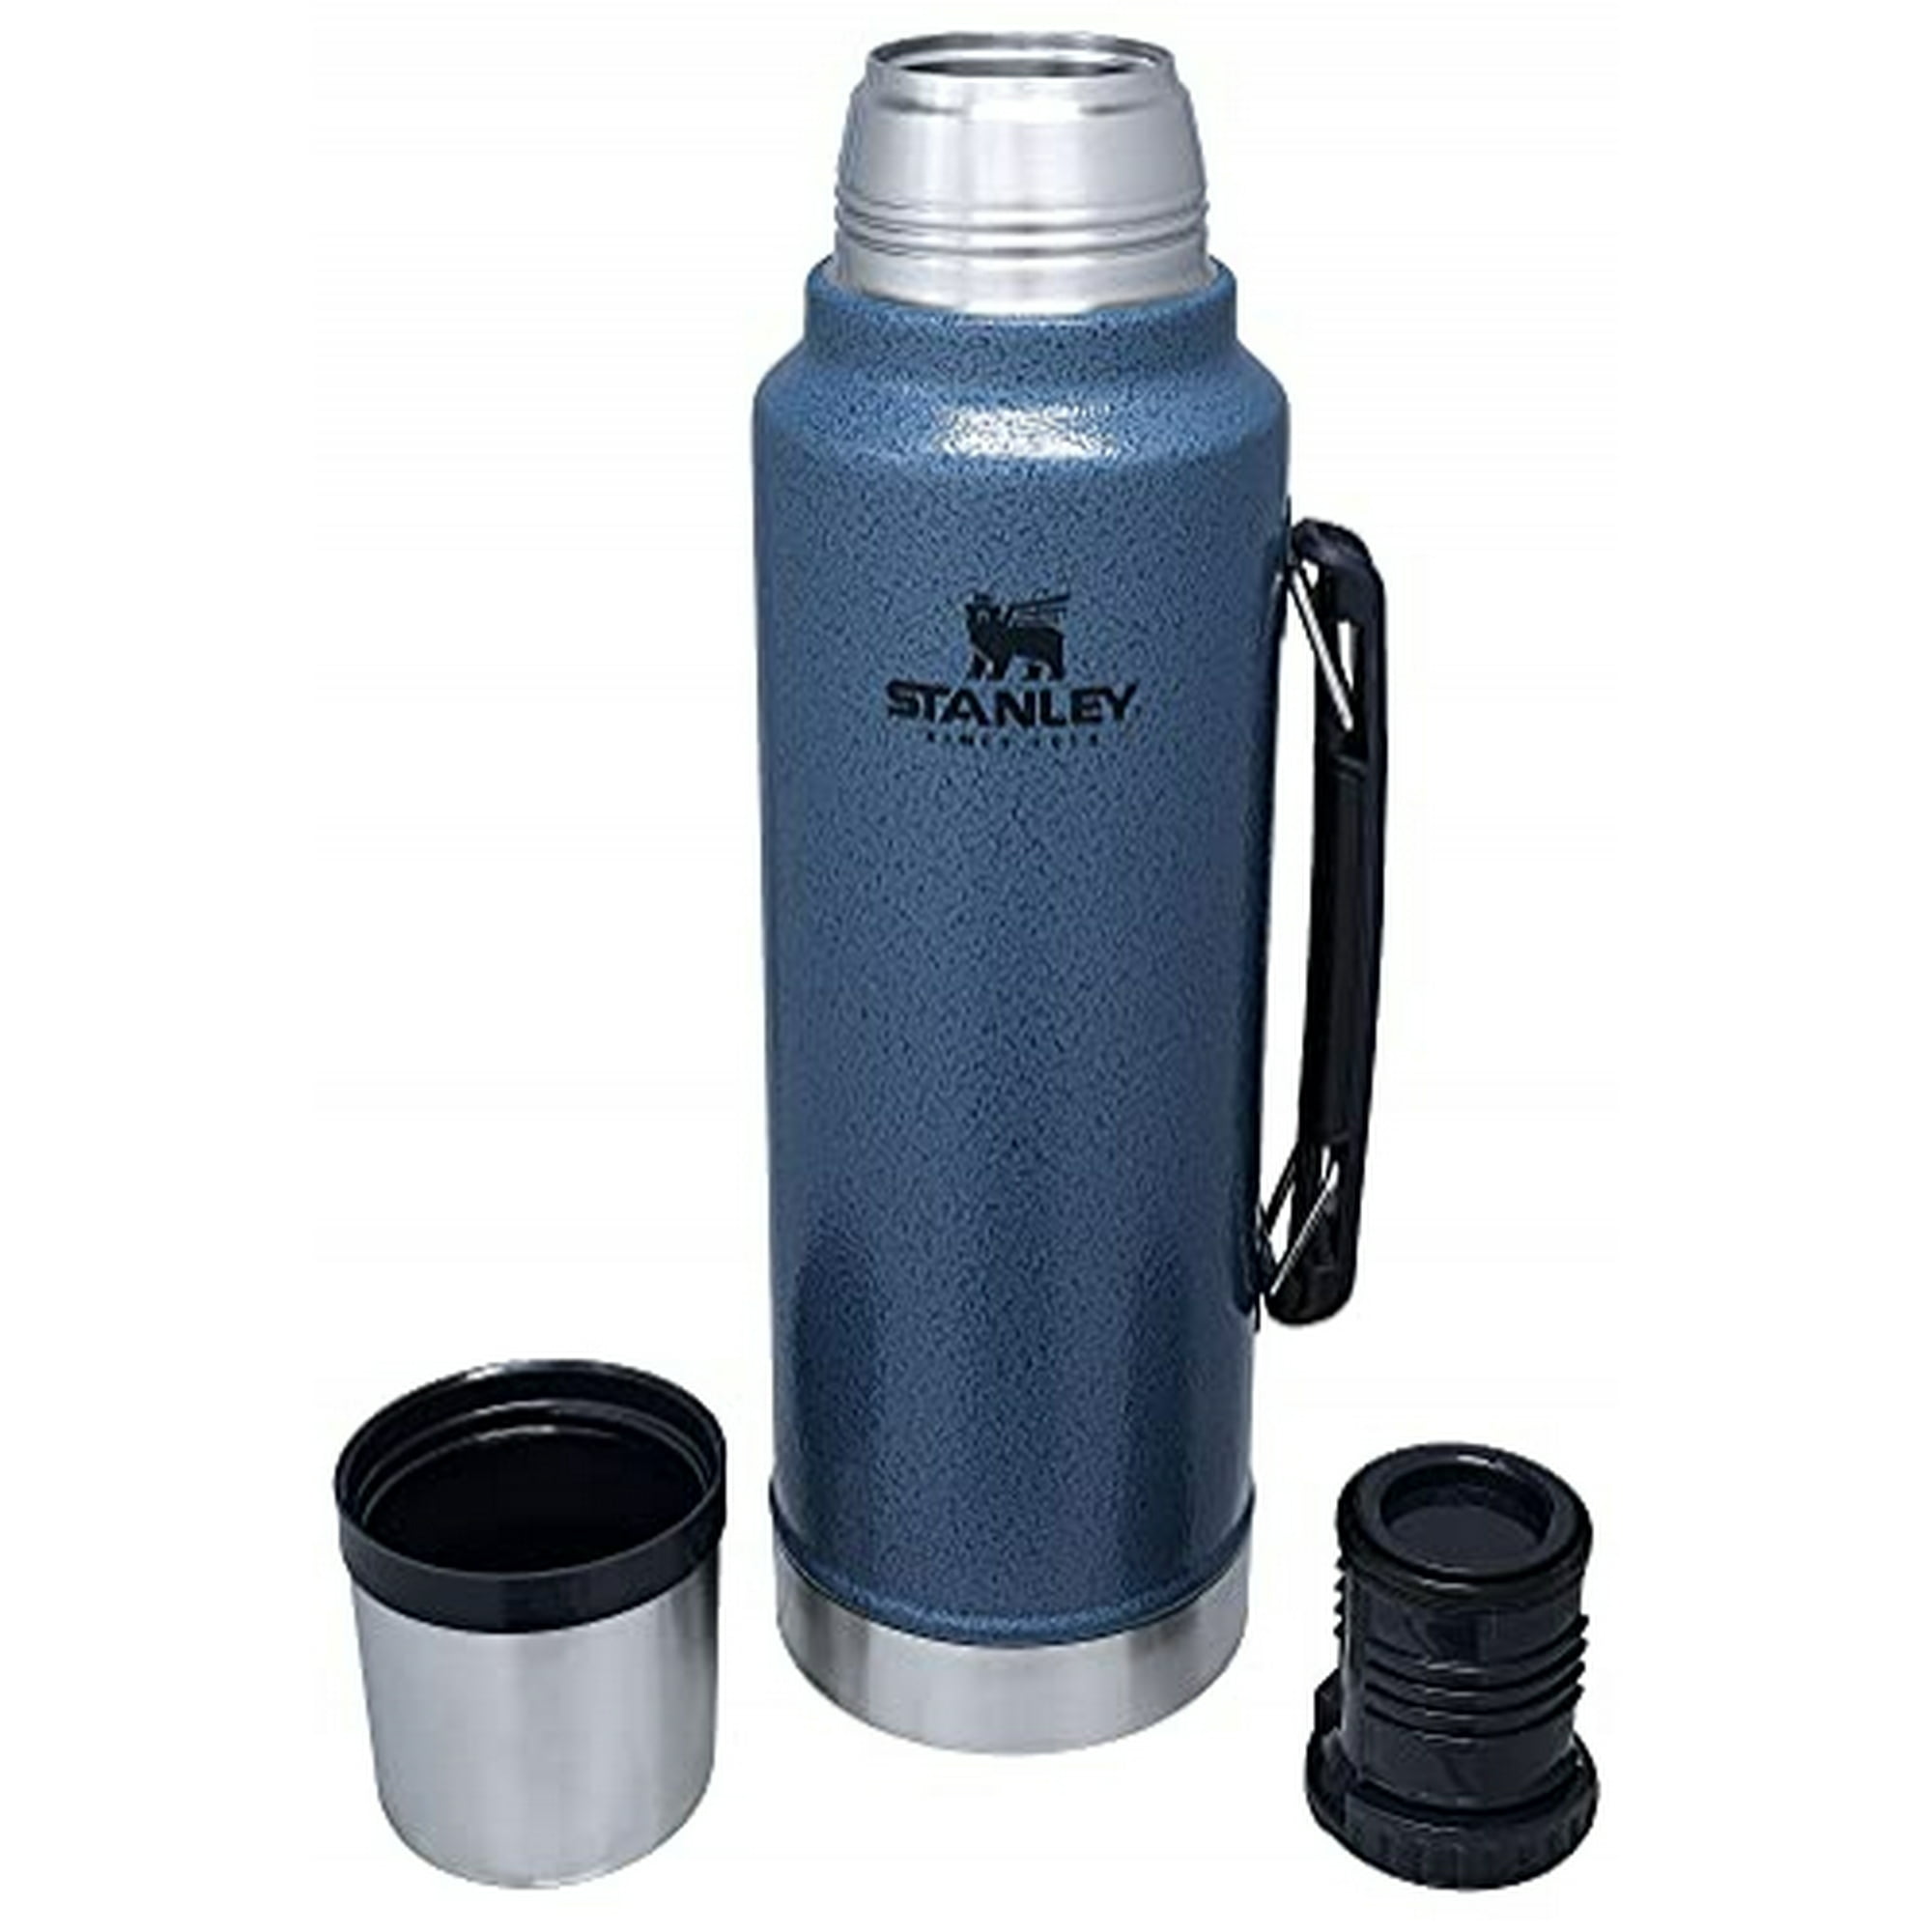 Stanley - Botella clásica de boca ancha con aislamiento al vacío (termo)  sin BPA, de acero inoxidable 18/8, para bebidas frías o calientes, mantiene